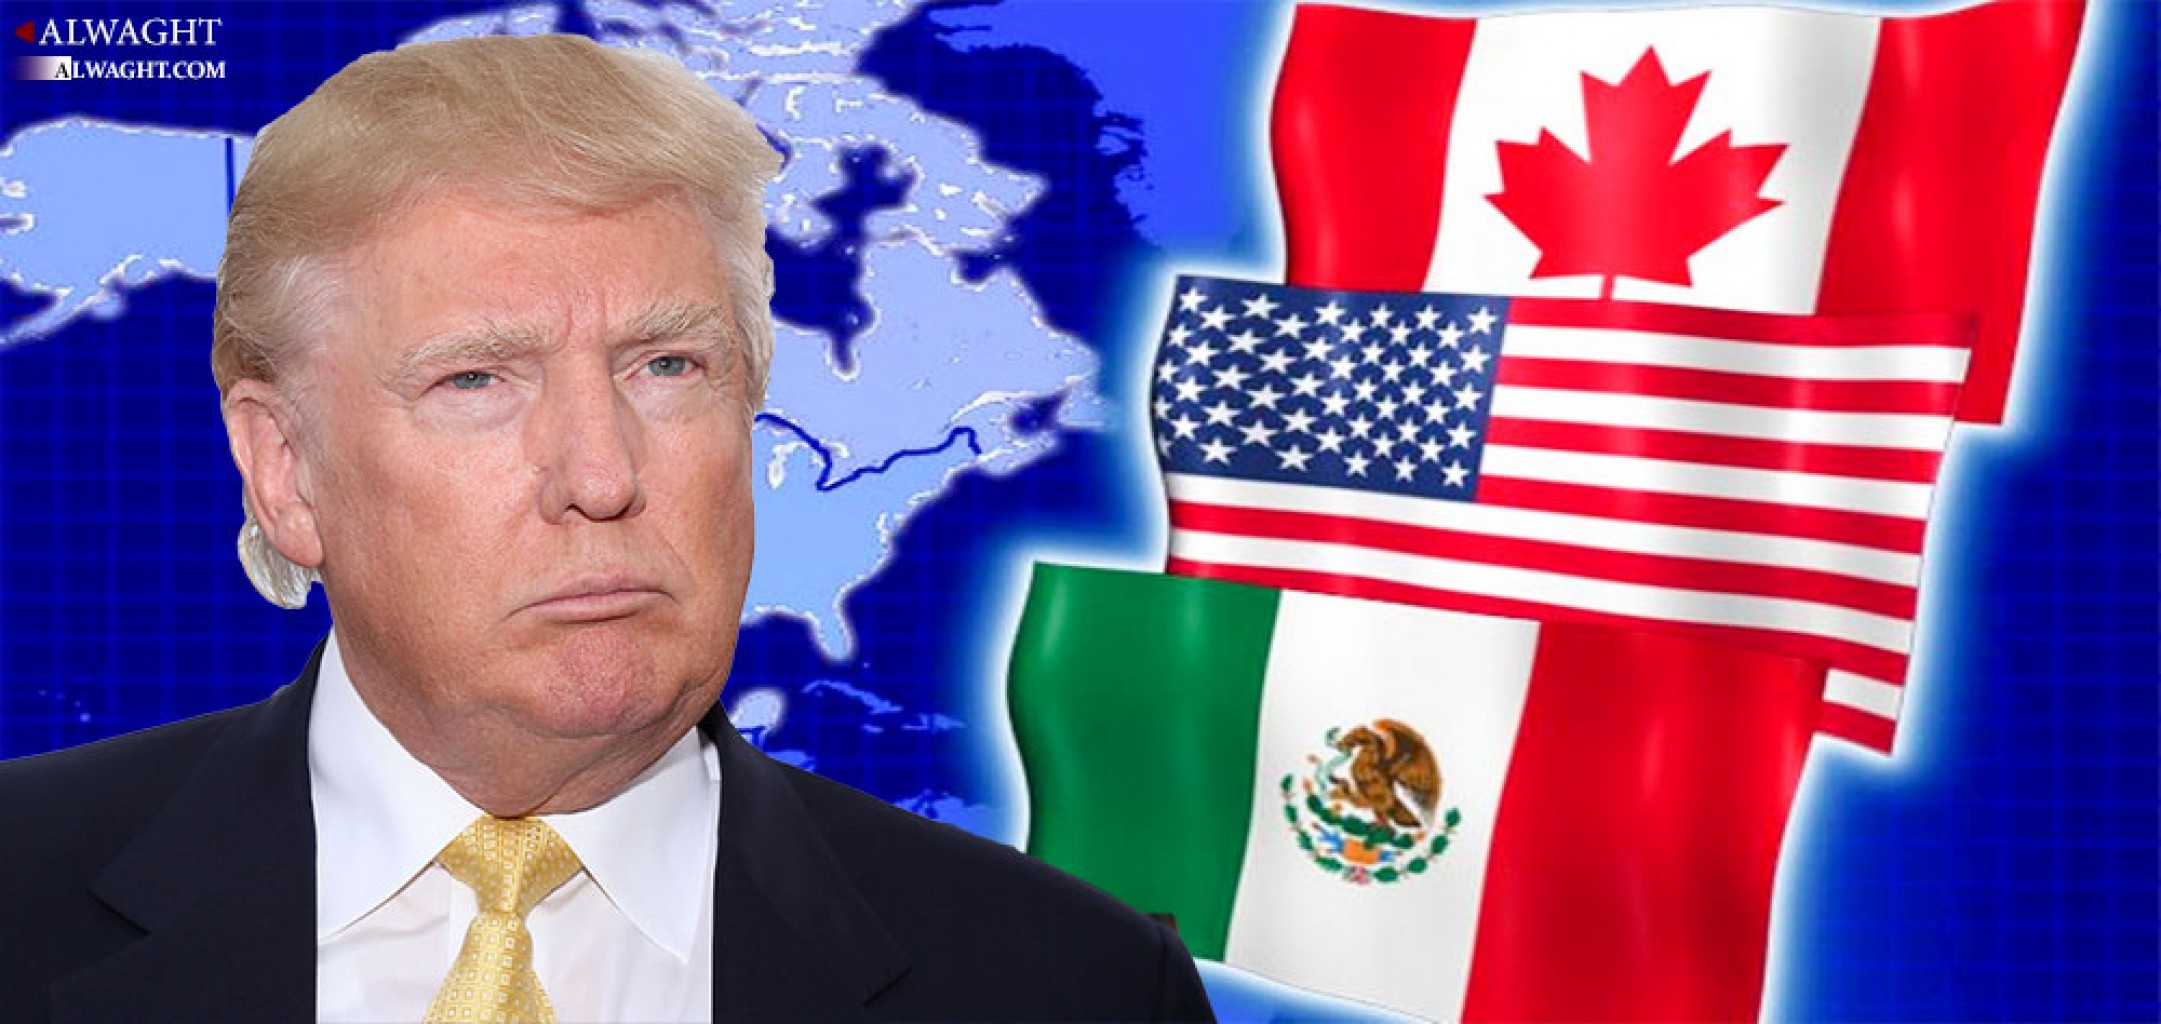 Trump defiende política comercial con China, Canadá y México